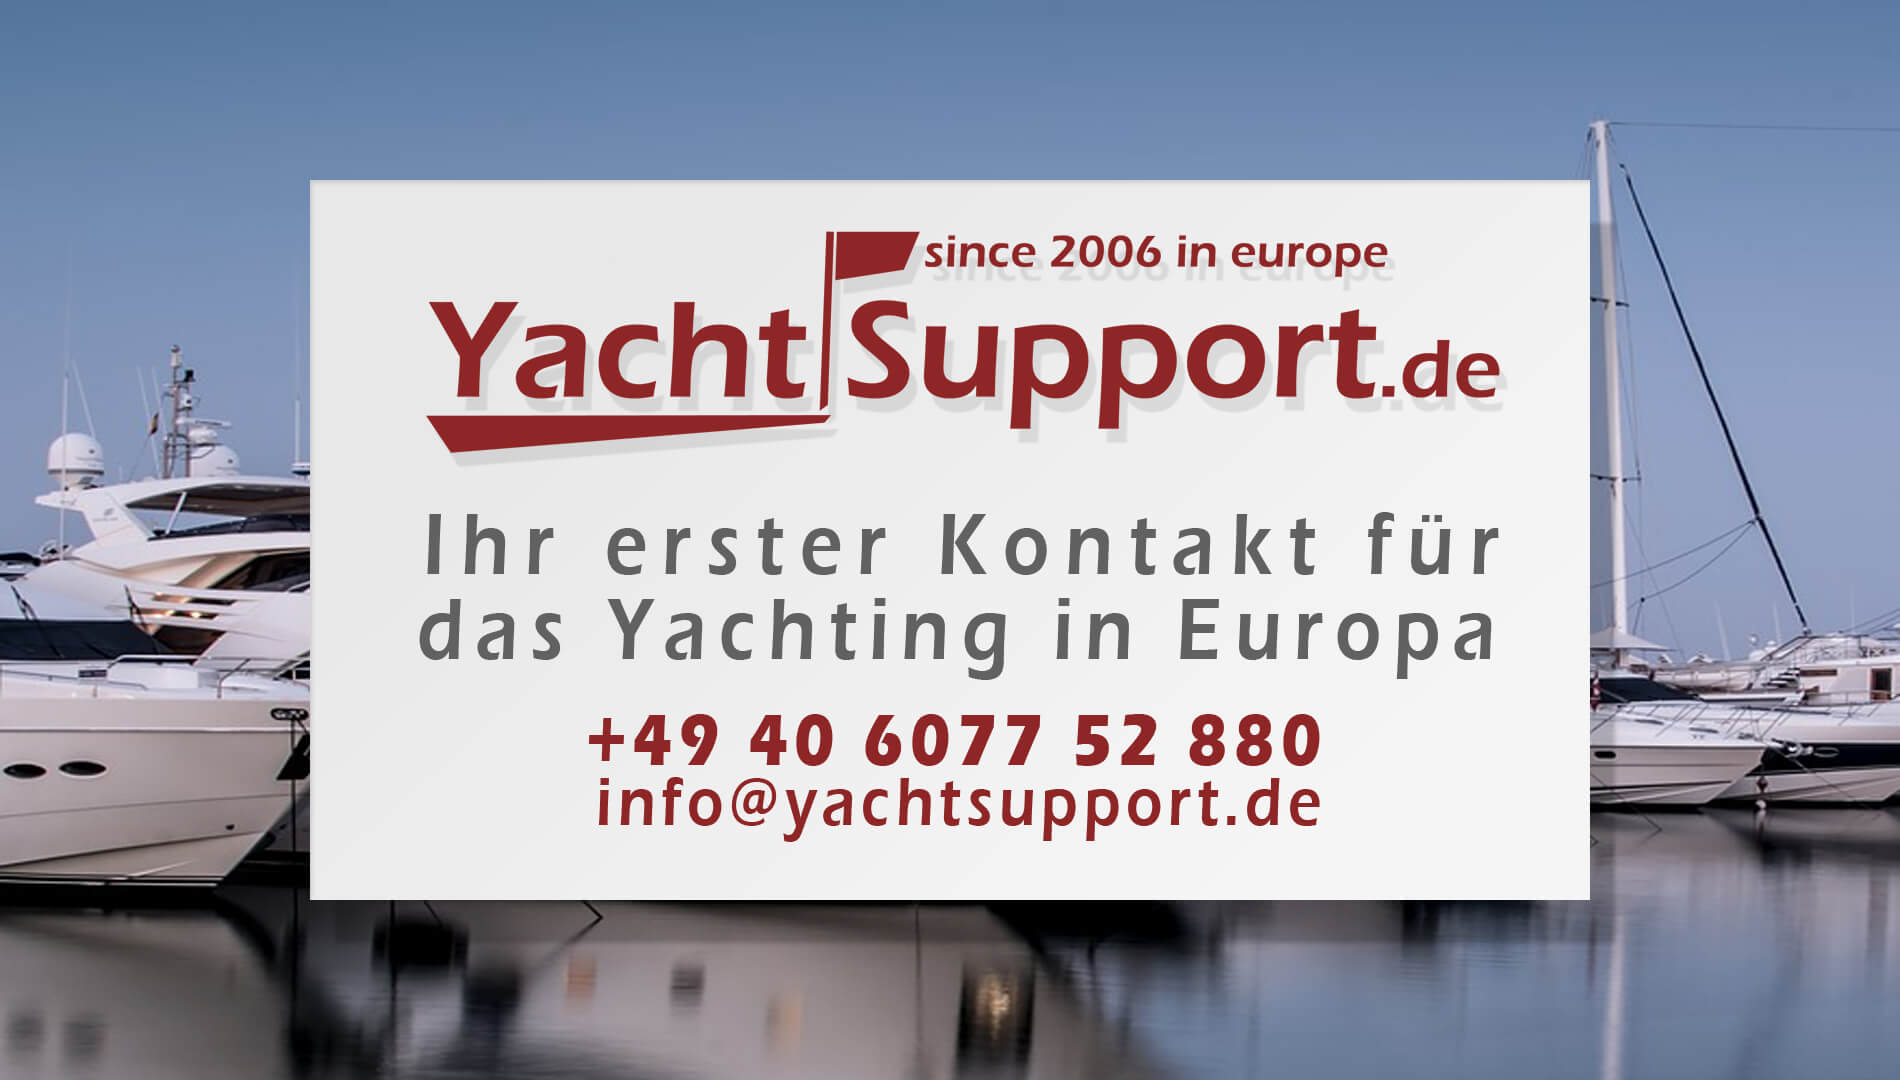 yachtkontor.s gmbh & co. kg